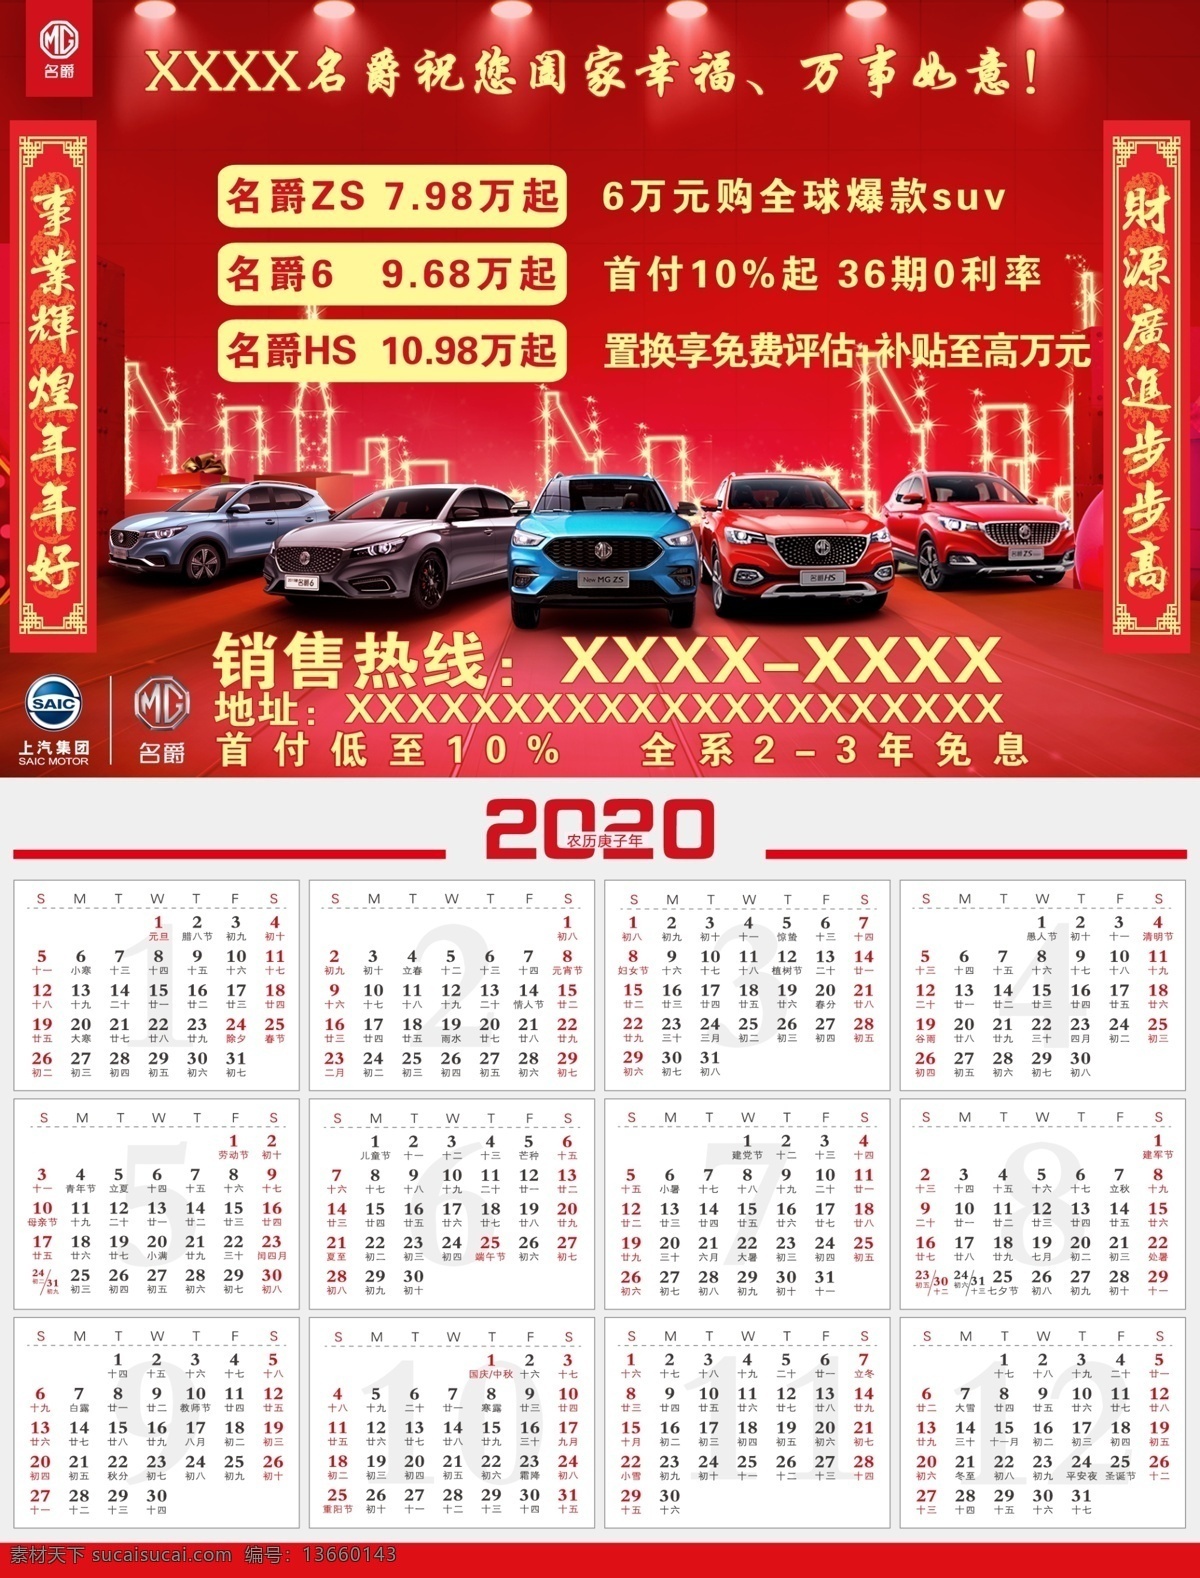 名爵 汽车 2020 年 日历 图 2020年 mg 月历